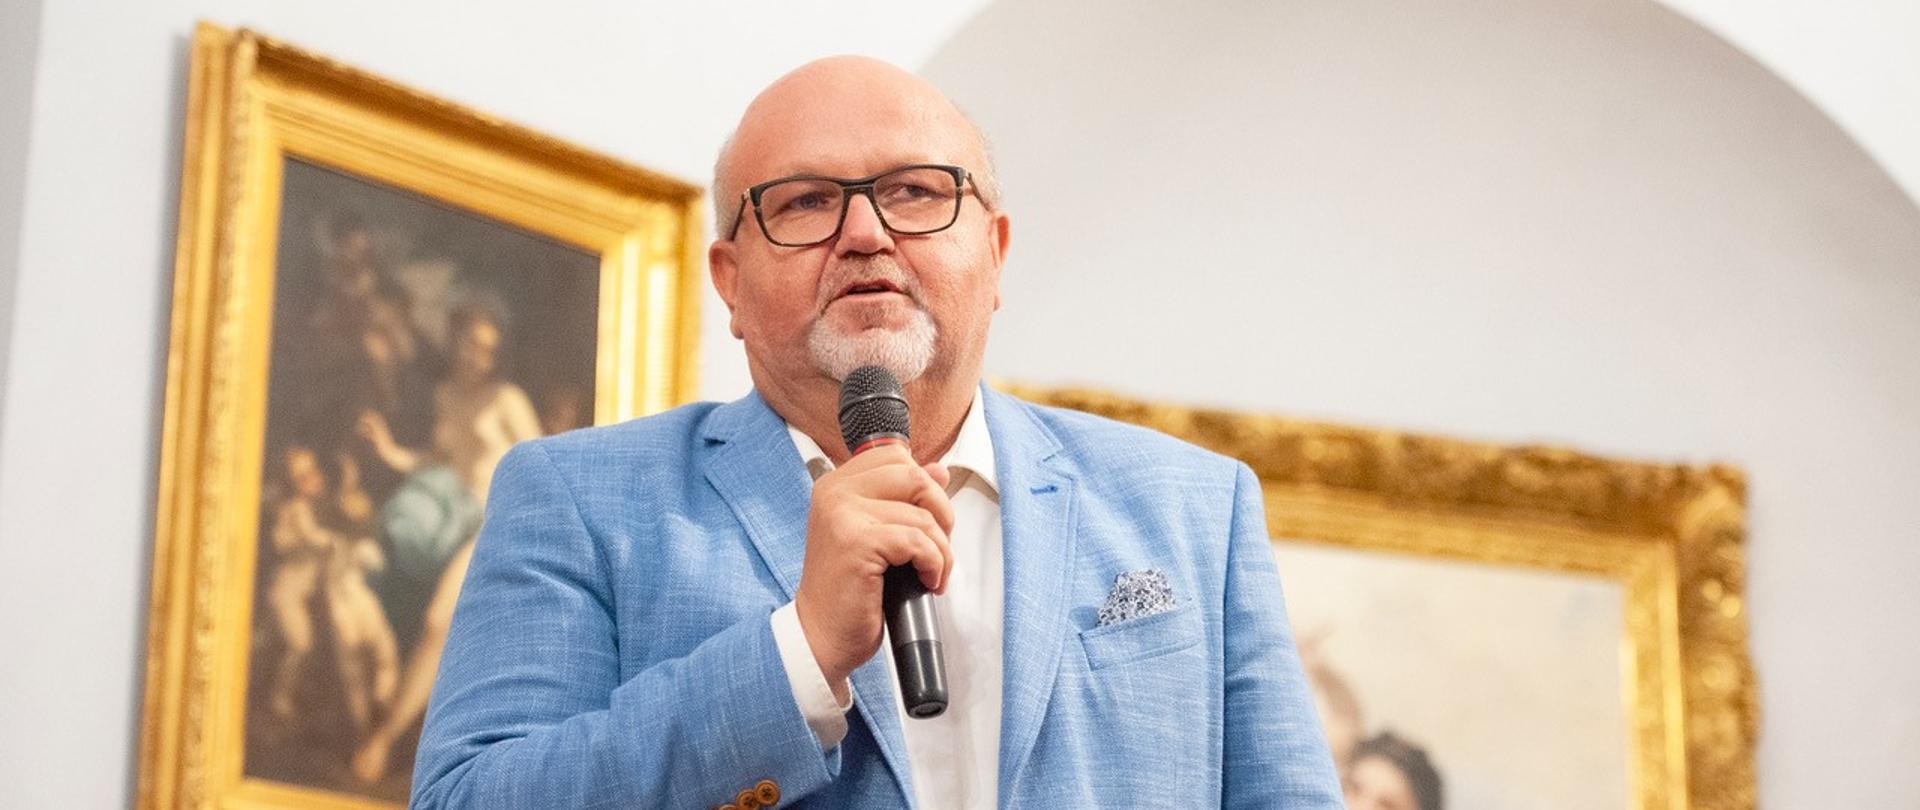 Eryk Mistewicz - Presidente del Instituto Nowych Mediów, editor de la revista mensual de opinión “Wszystko co najważniejsze”, ganador del Premio Pulitzer Polaco.
